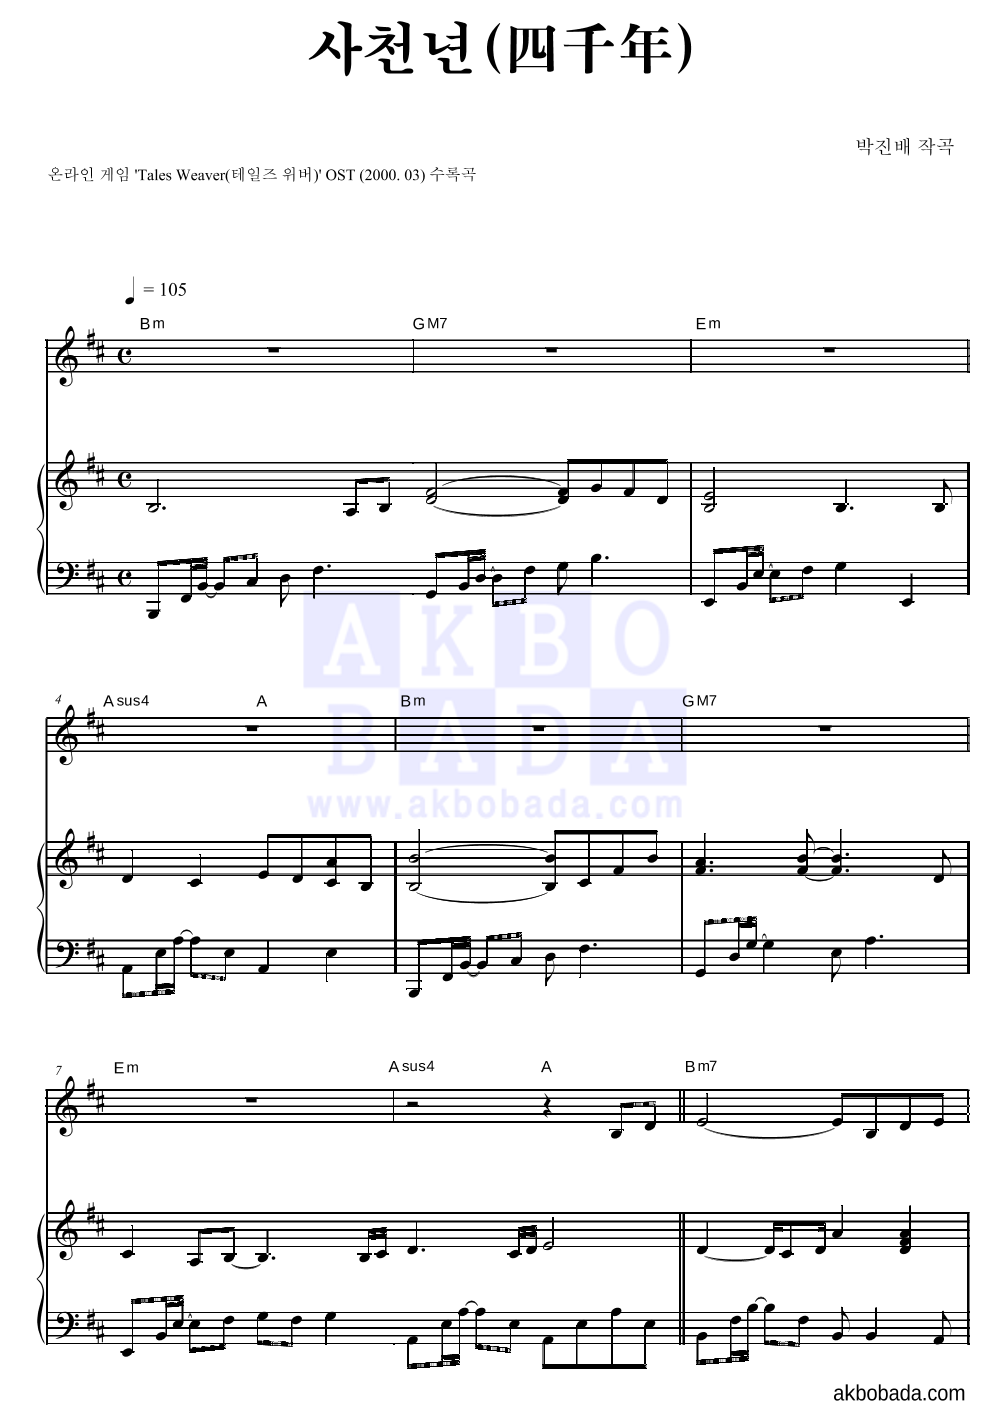 테일즈위버 OST - 사천년(四千年) Solo&피아노 악보 